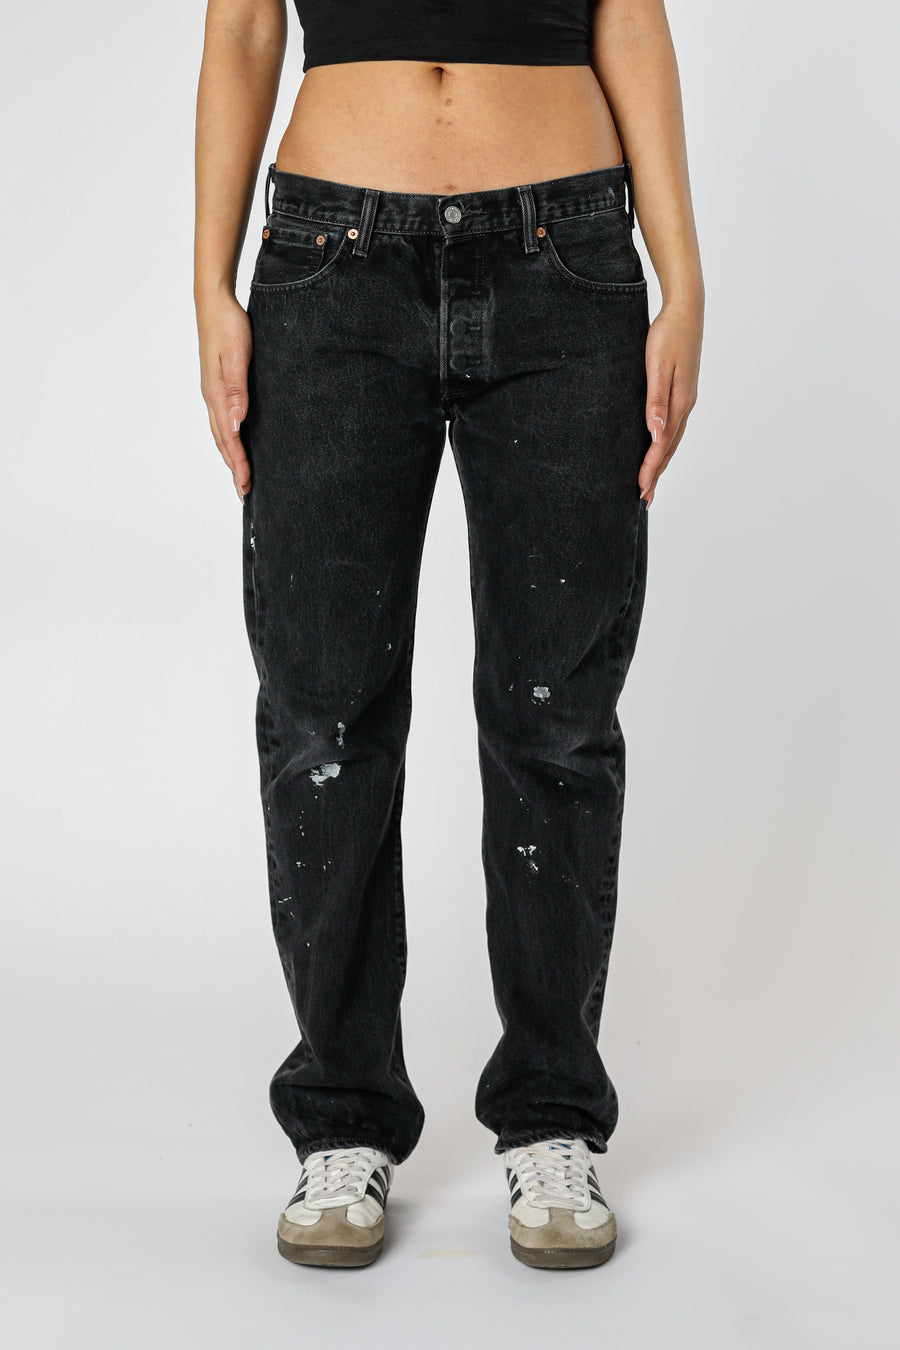 Vintage Levi's Denim Pants - W33 L32